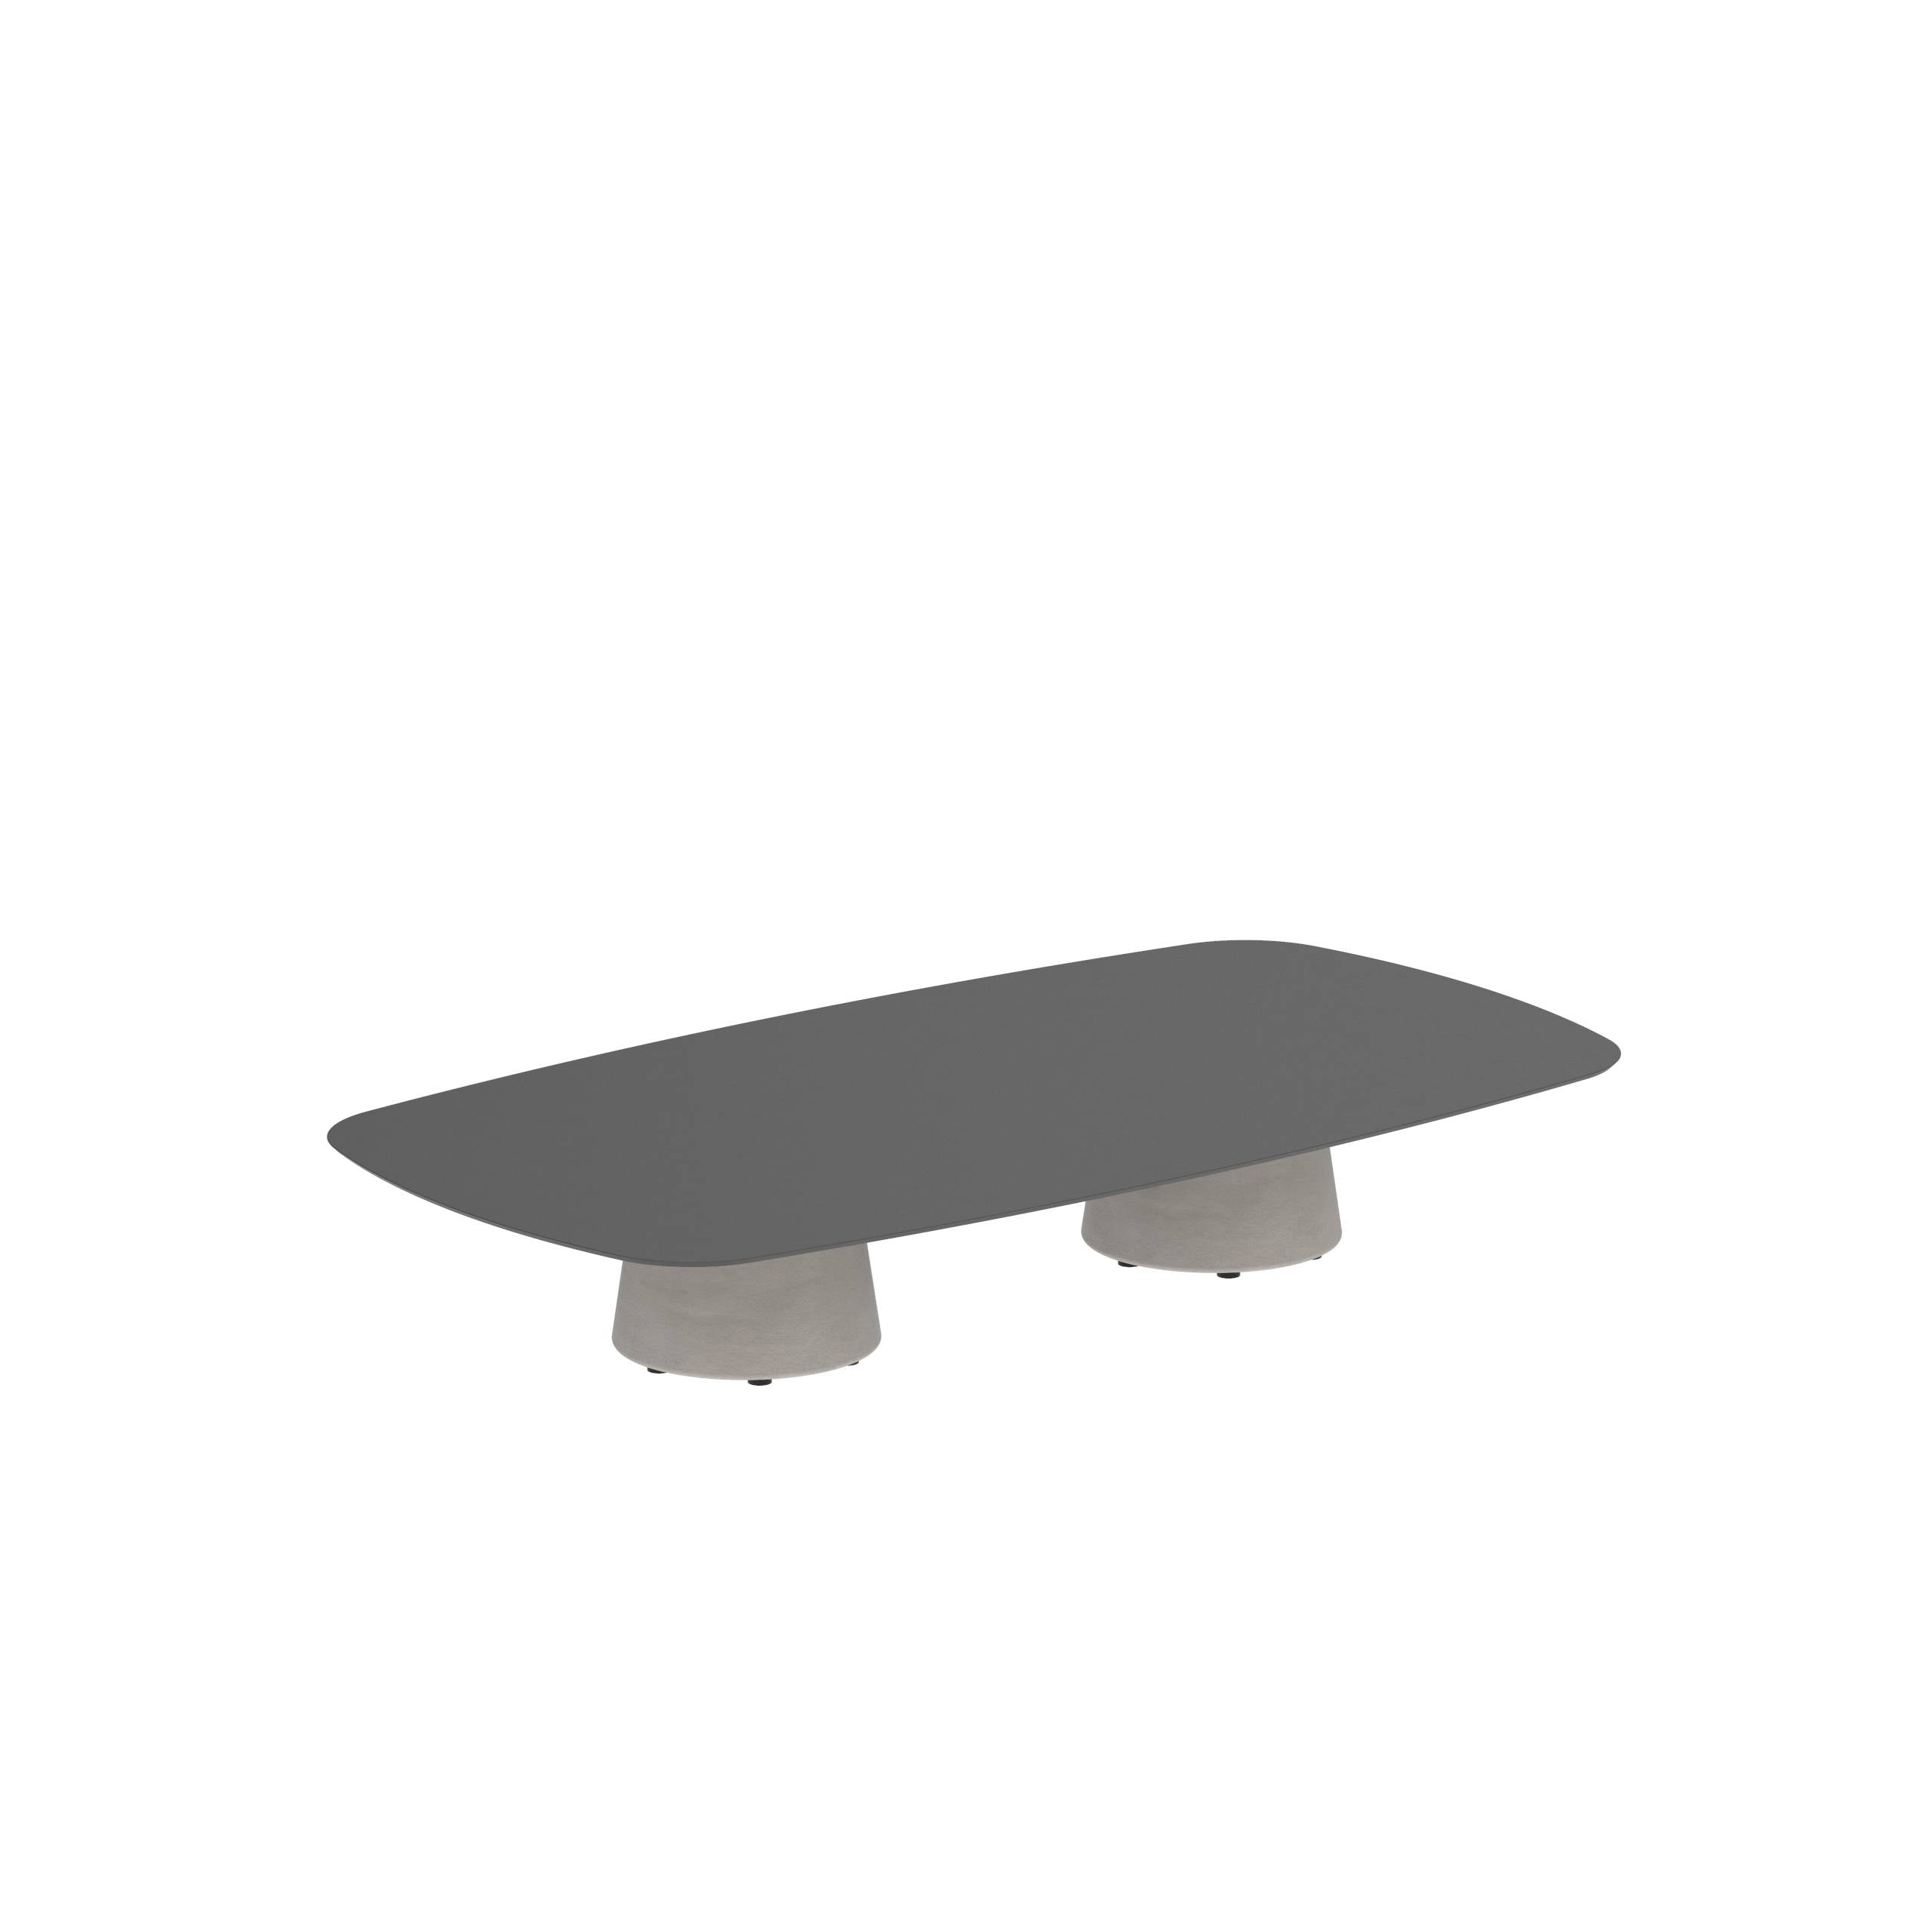 Conix Table 220x120 Cm Low Lounge Legs Concrete Cement Grey - Table Top Ceramic Black